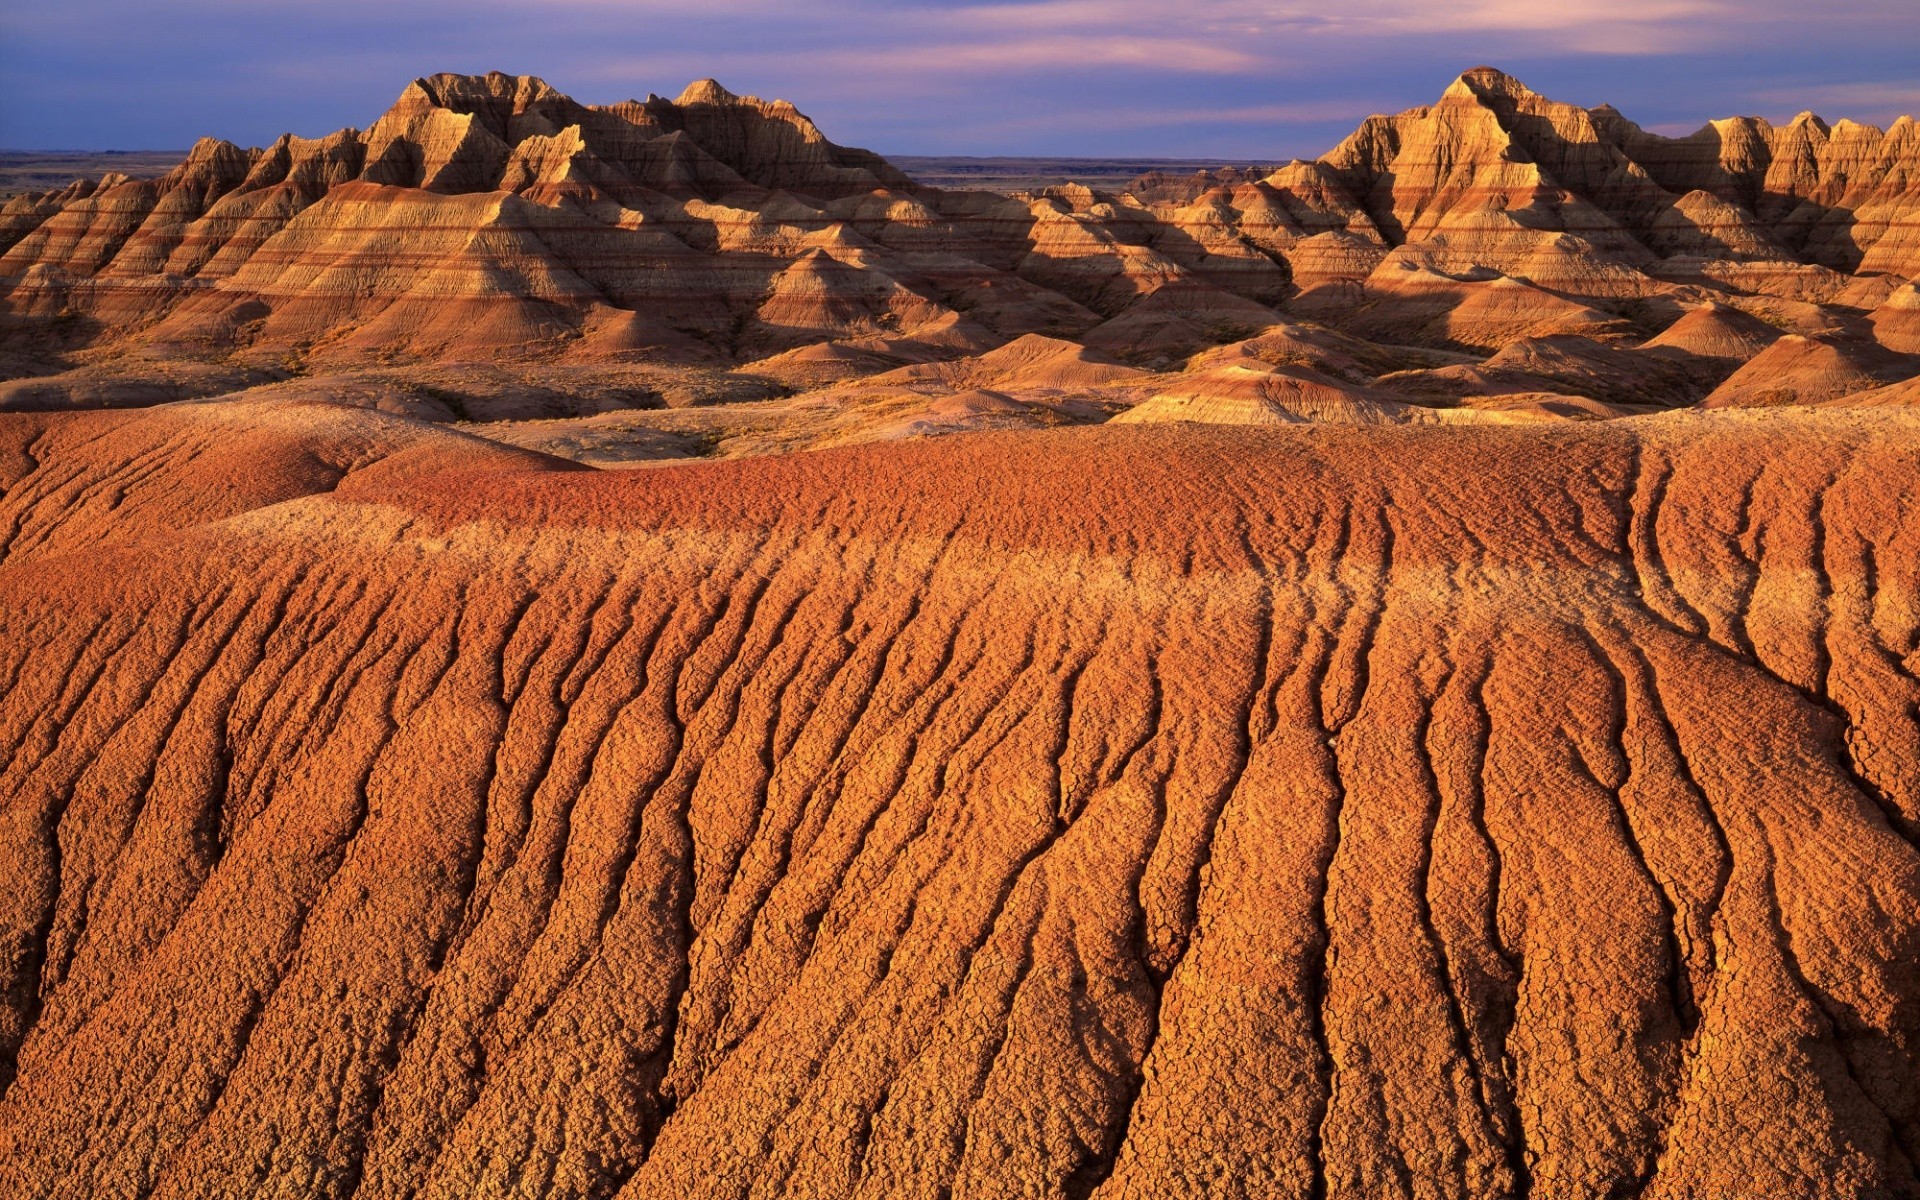 desert dry arid sand landscape scenic travel barren outdoors nature rock hill sunset soil dawn sky geology